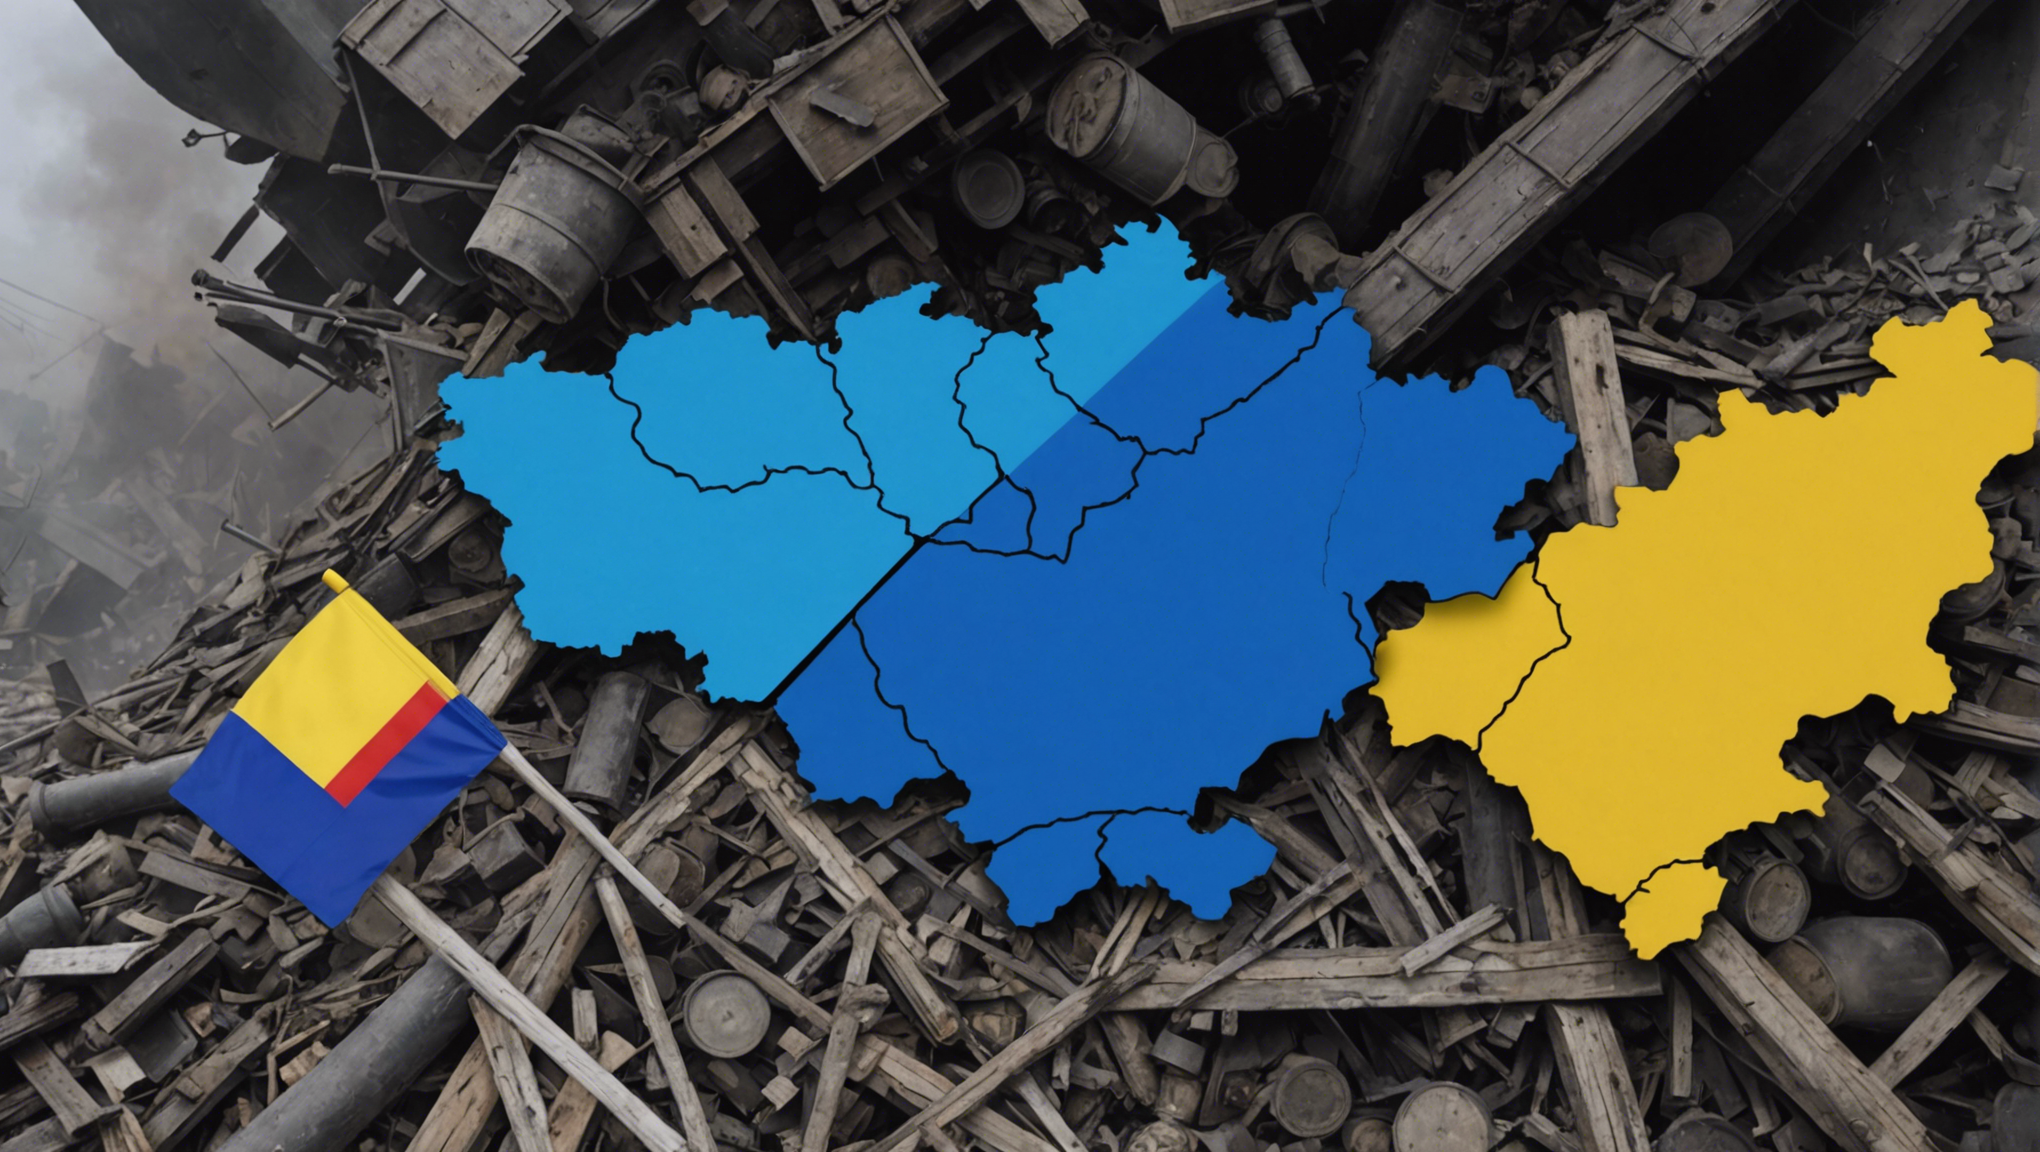 découvrez les explications simples du conflit entre la russie et l'ukraine dans cet article instructif. comprenez les enjeux de cette situation géopolitique complexe.